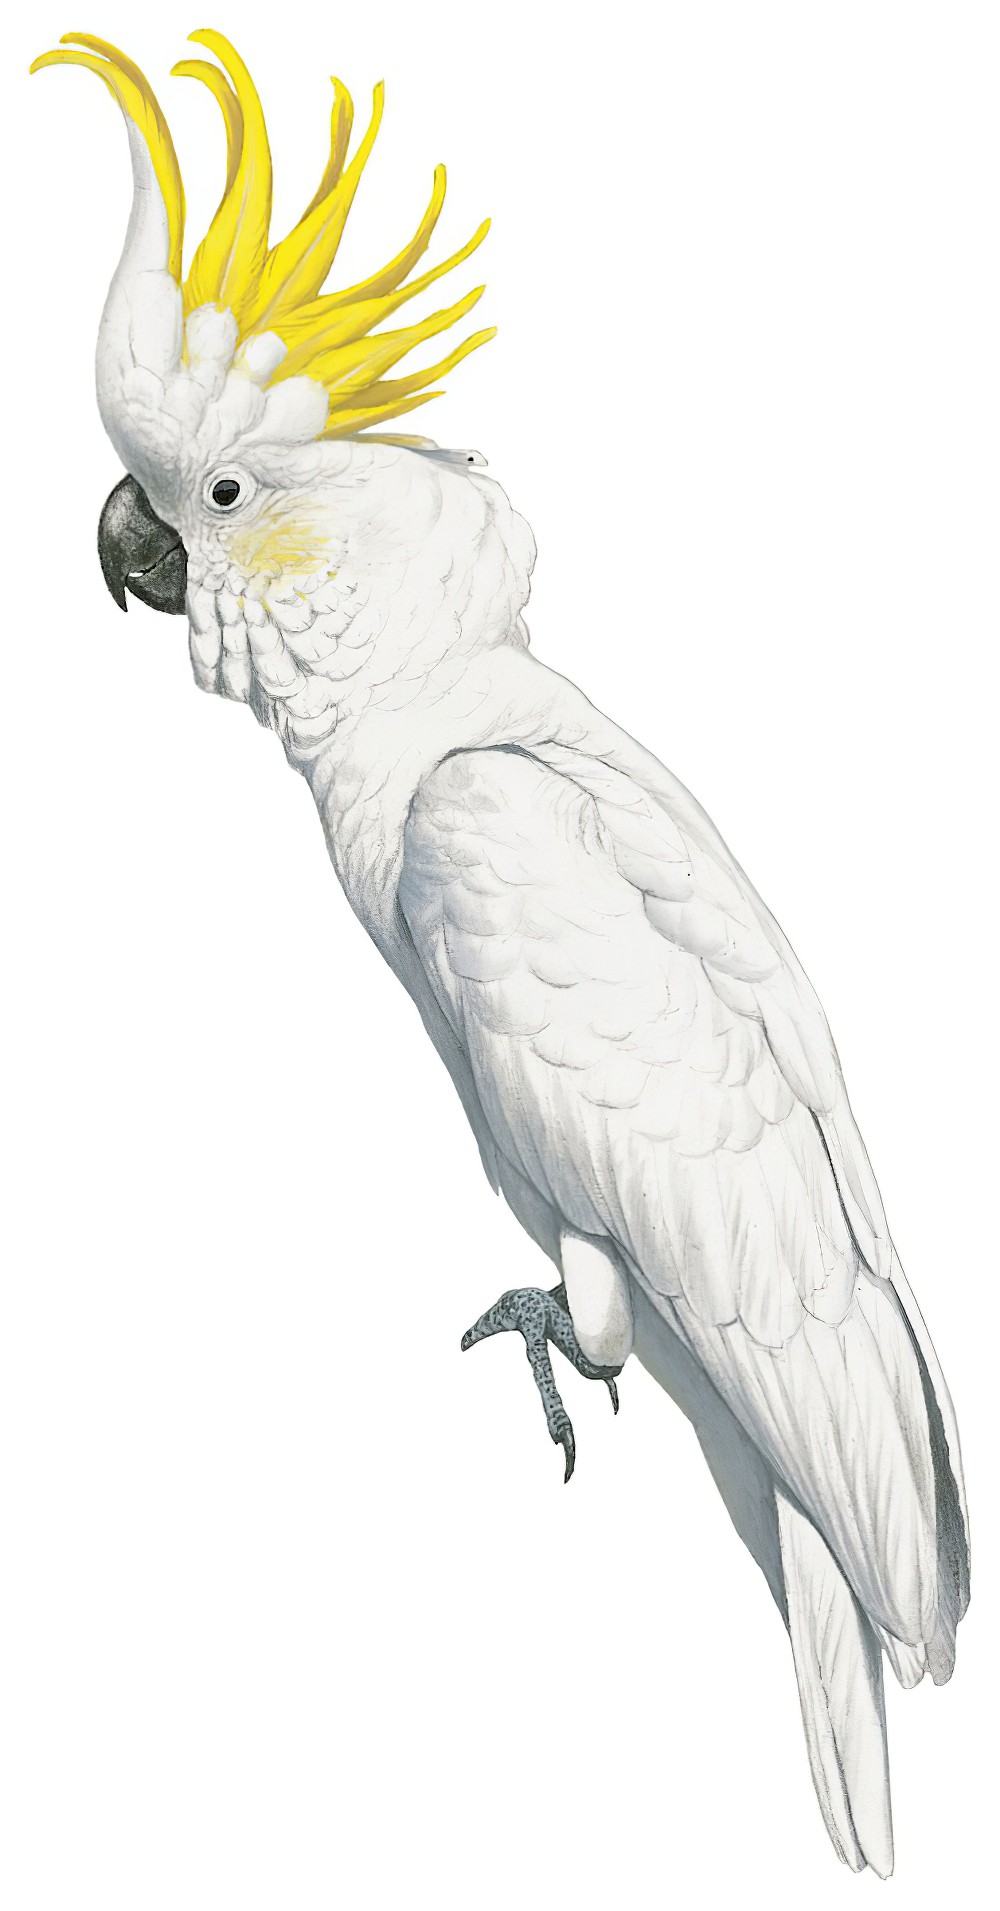 Sulphur-crested Cockatoo / Cacatua galerita